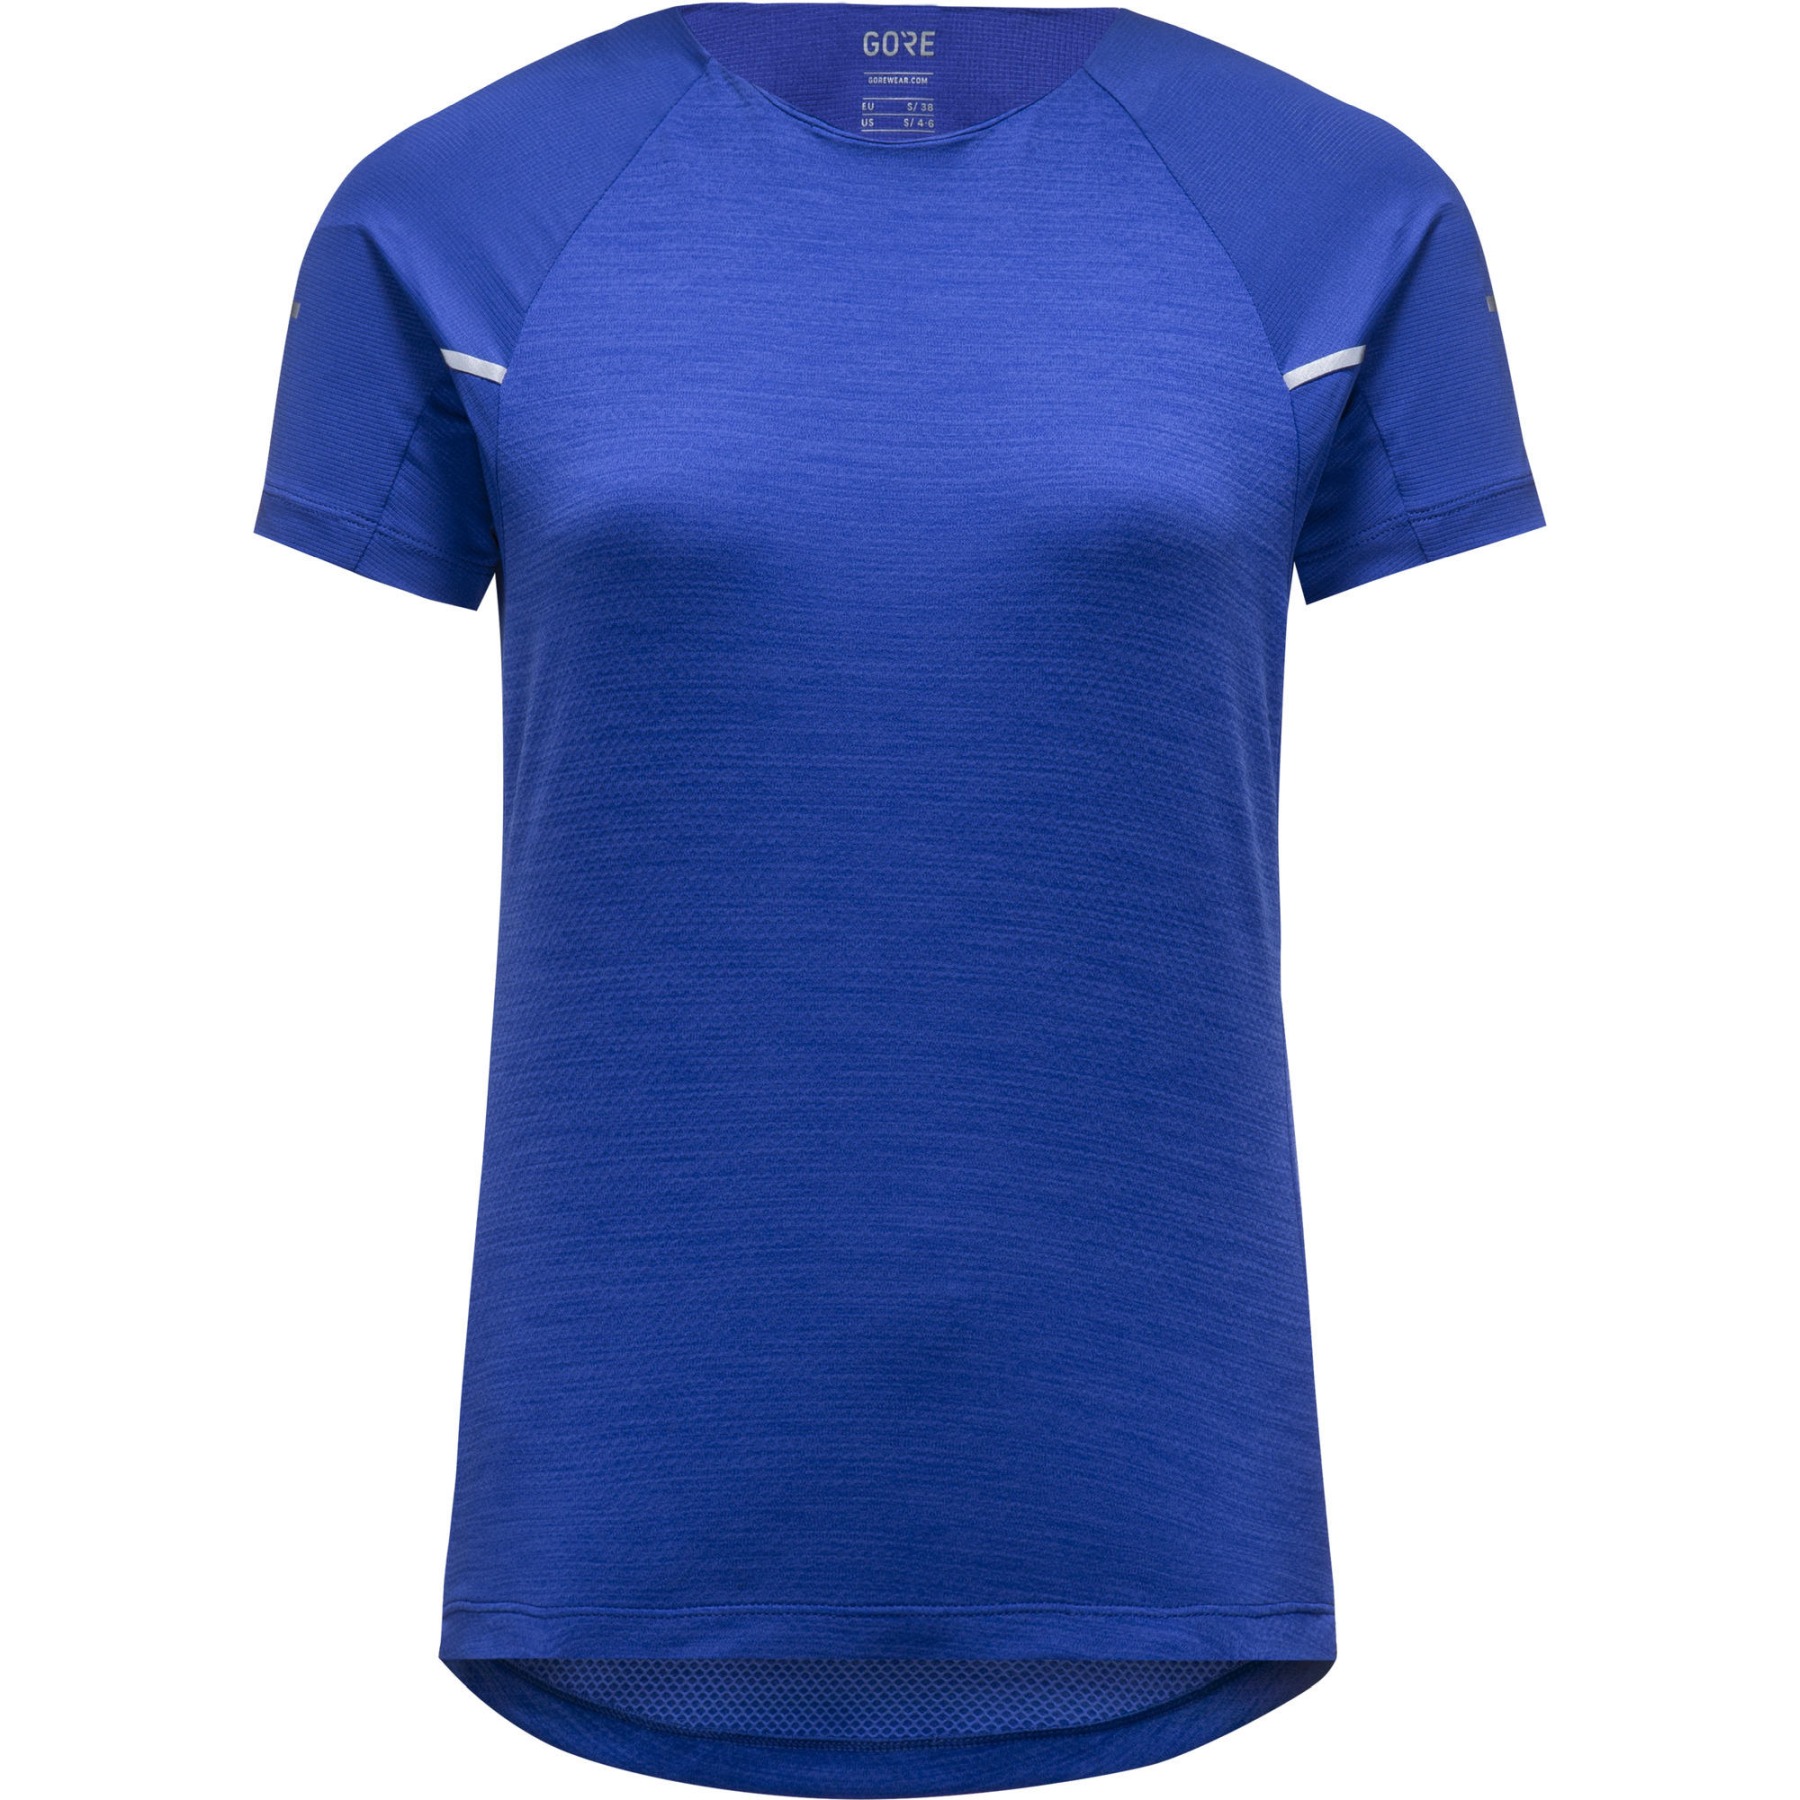 Produktbild von GOREWEAR Vivid Laufshirt Damen - ultramarine blue BL00